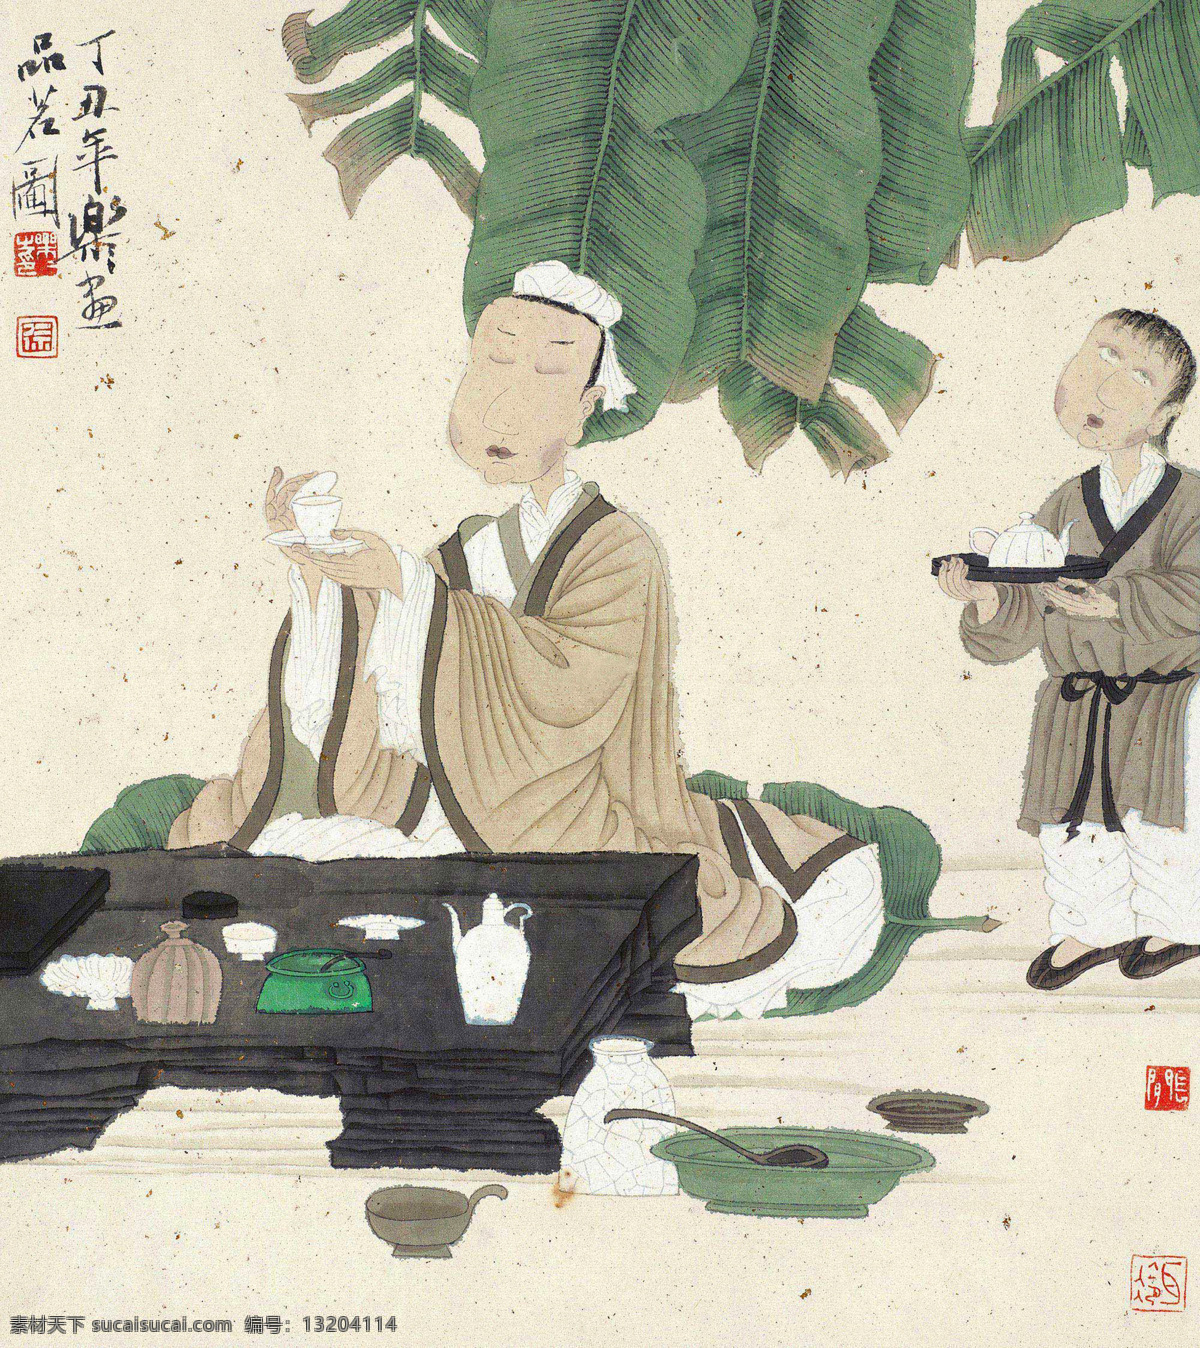 品茗图 徐乐乐 国画 品茗 品茶 芭蕉 茶具 文人 人物 中国画 绘画书法 文化艺术